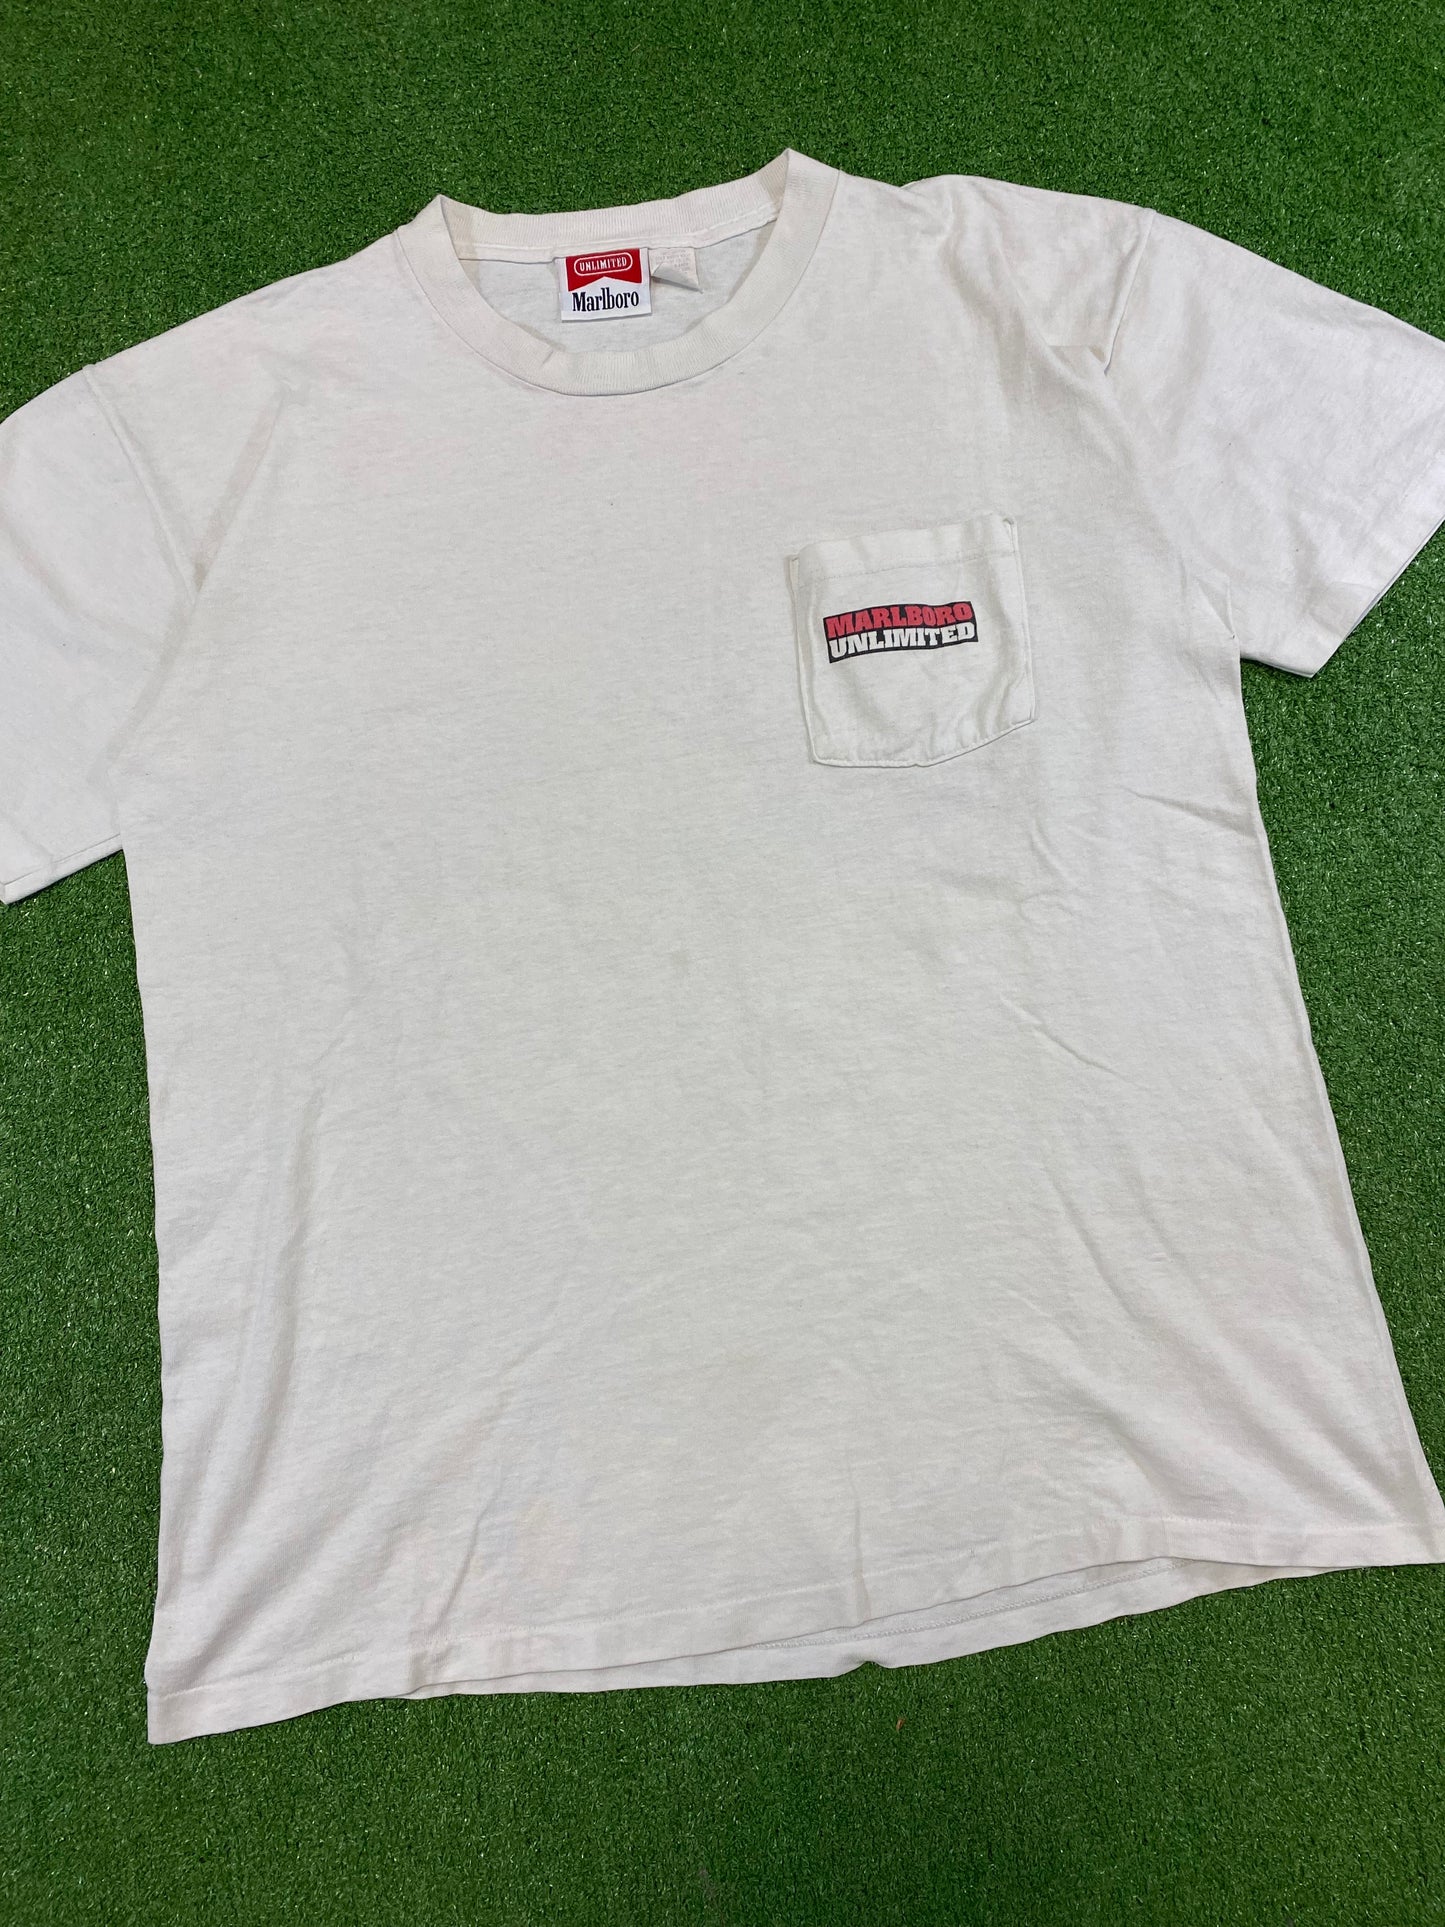 1995 Marlboro Unlimited T-Shirt XL